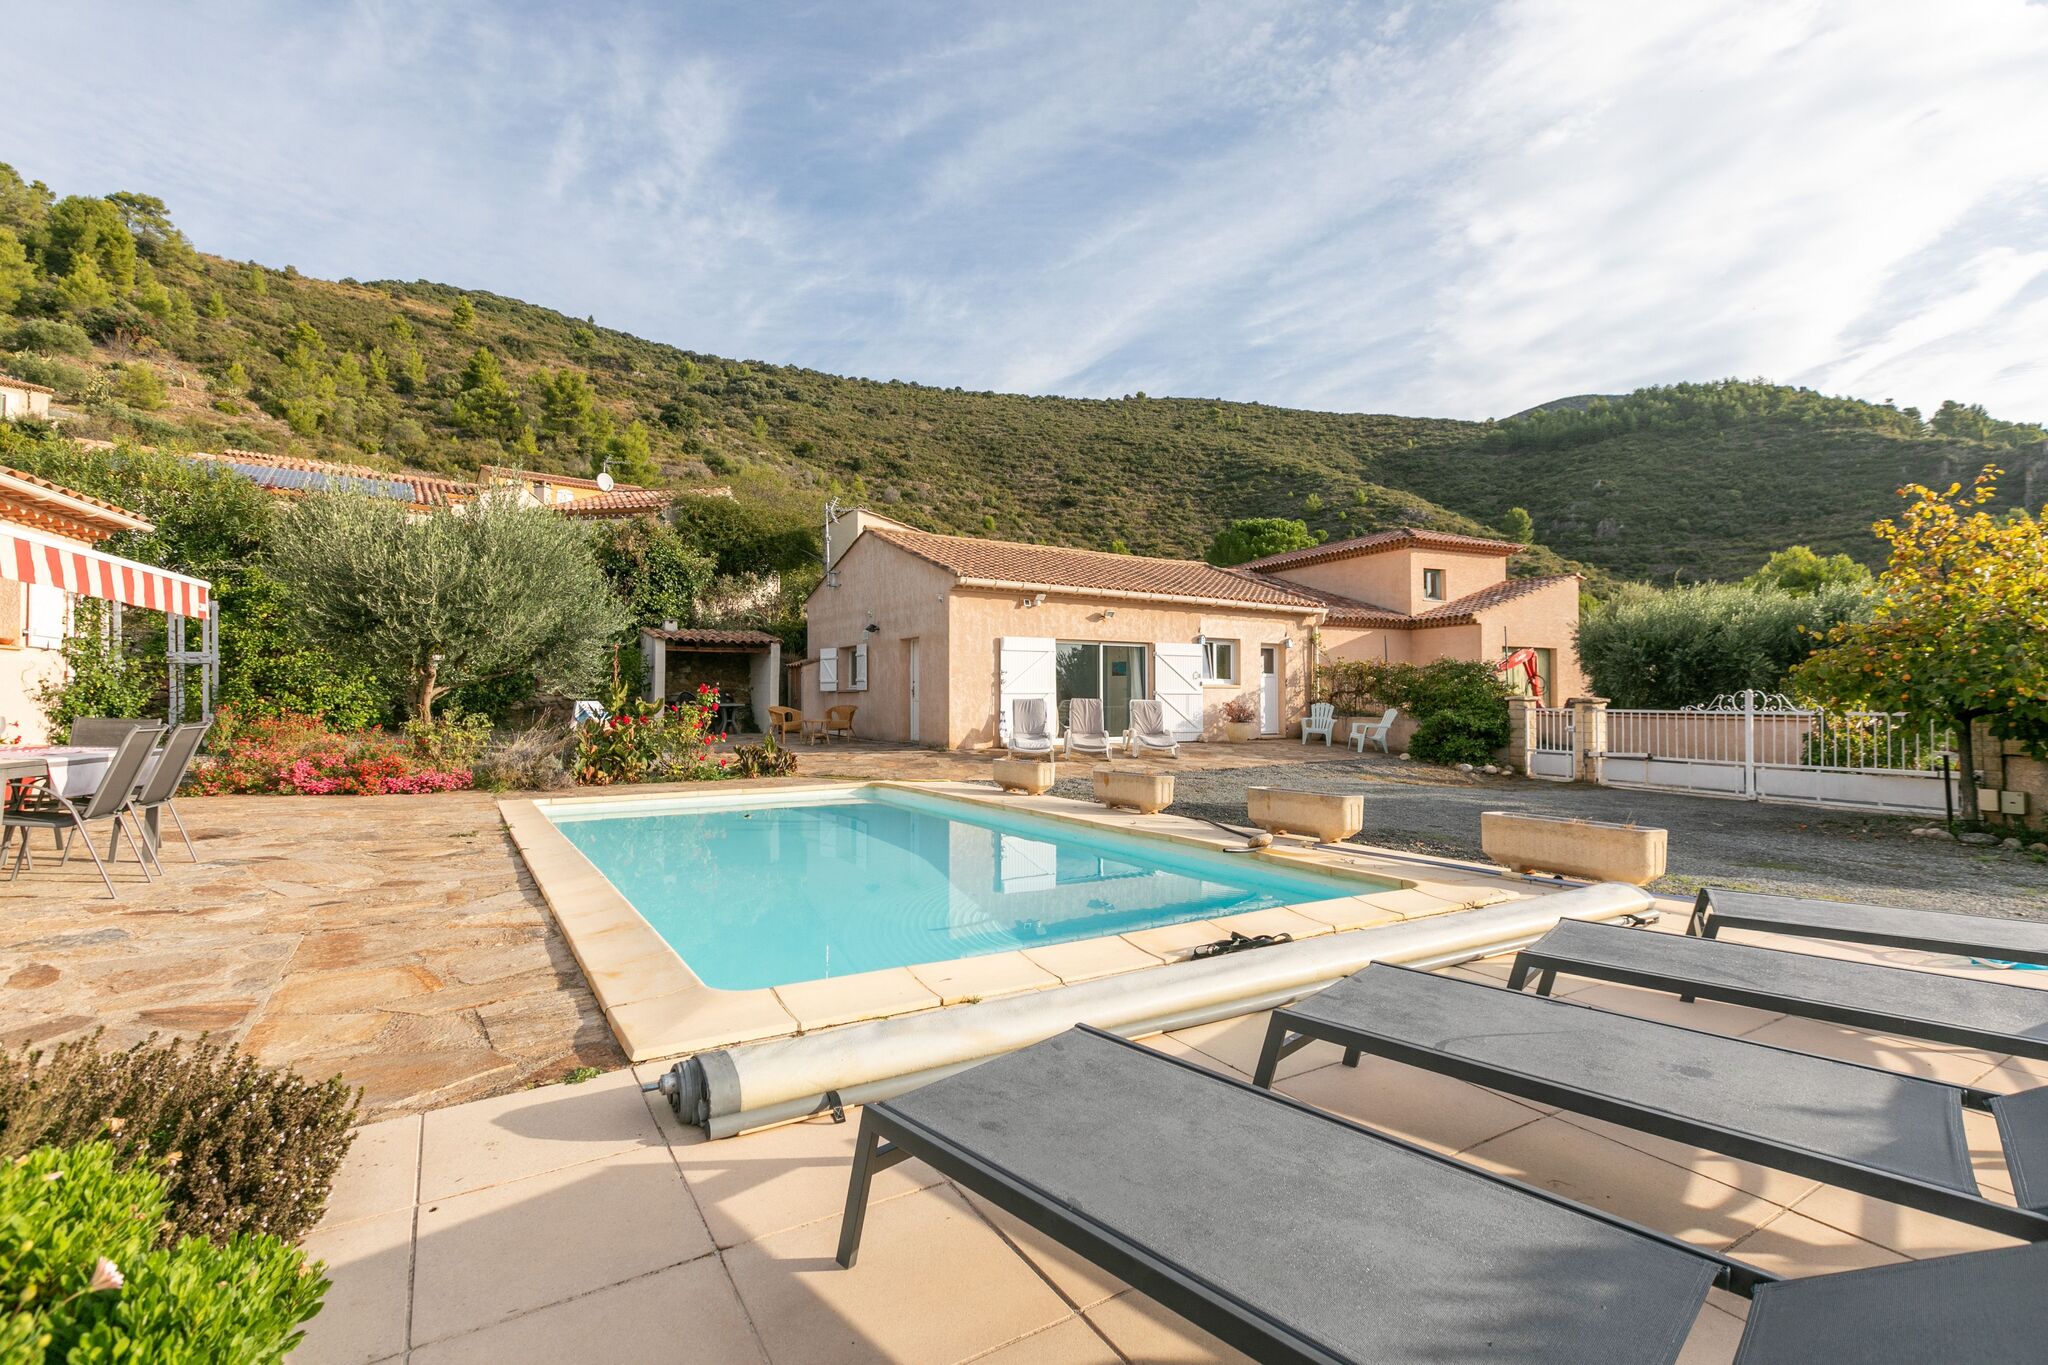 Elite-Ferienhaus in Südfrankreich mit eigenem Pool